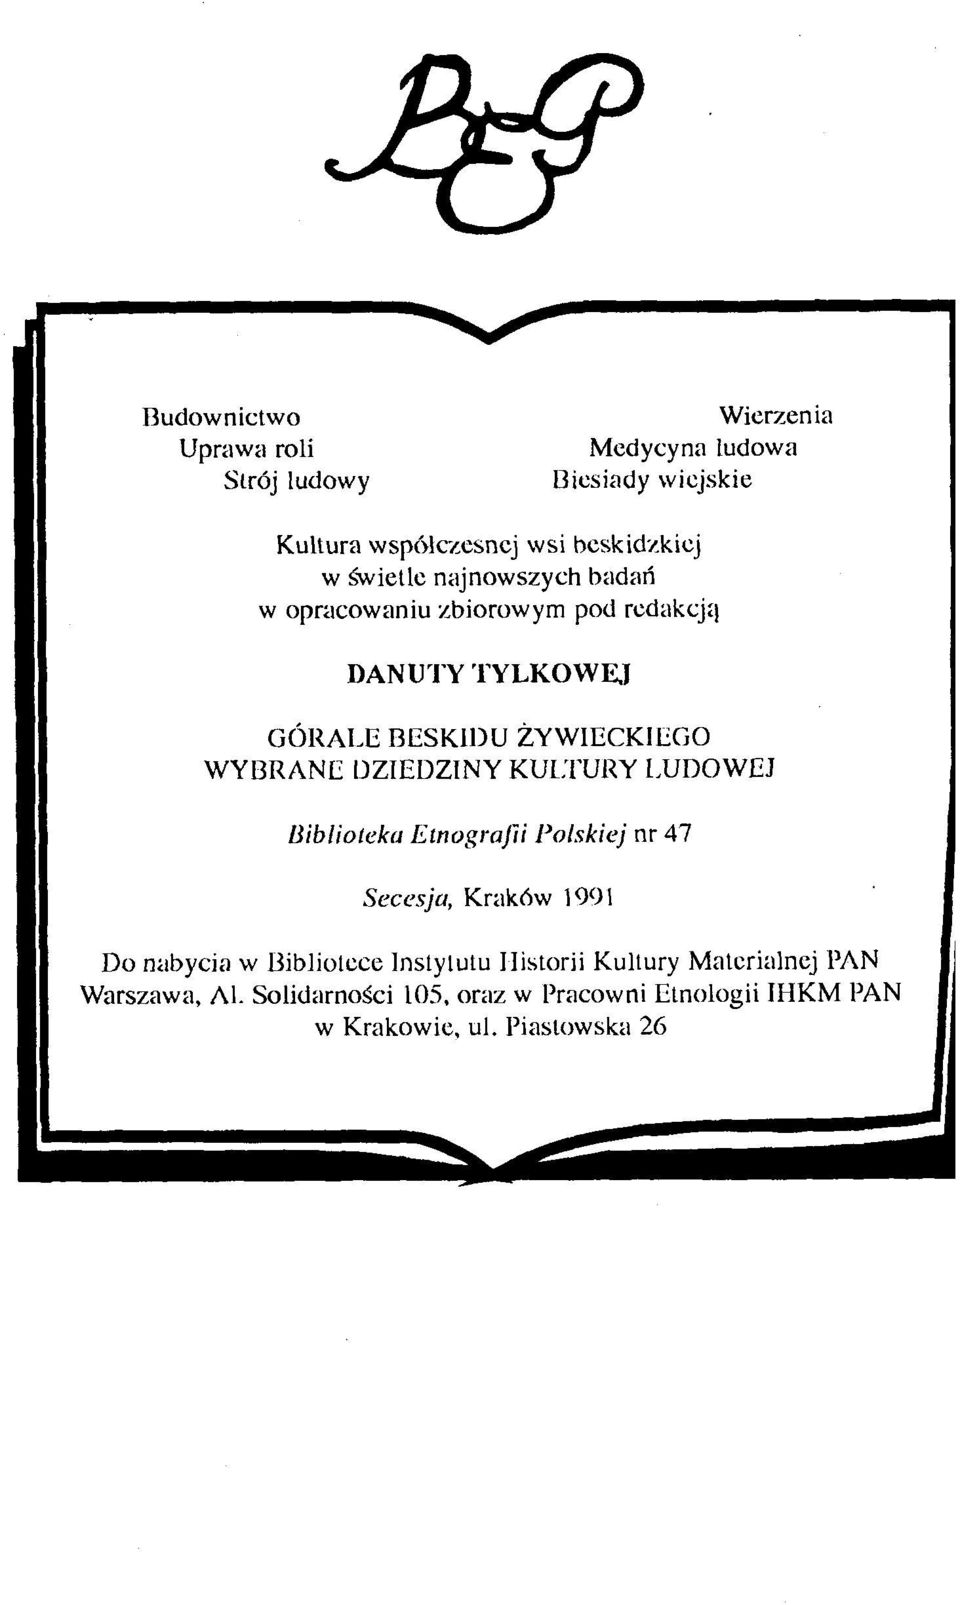 DZIEDZINY KULTURY LUDOWEJ Biblioteka Etnografii Polskiej nr 47 Secesja, Kraków 1991 Do nabycia w Bibliotece Instytutu